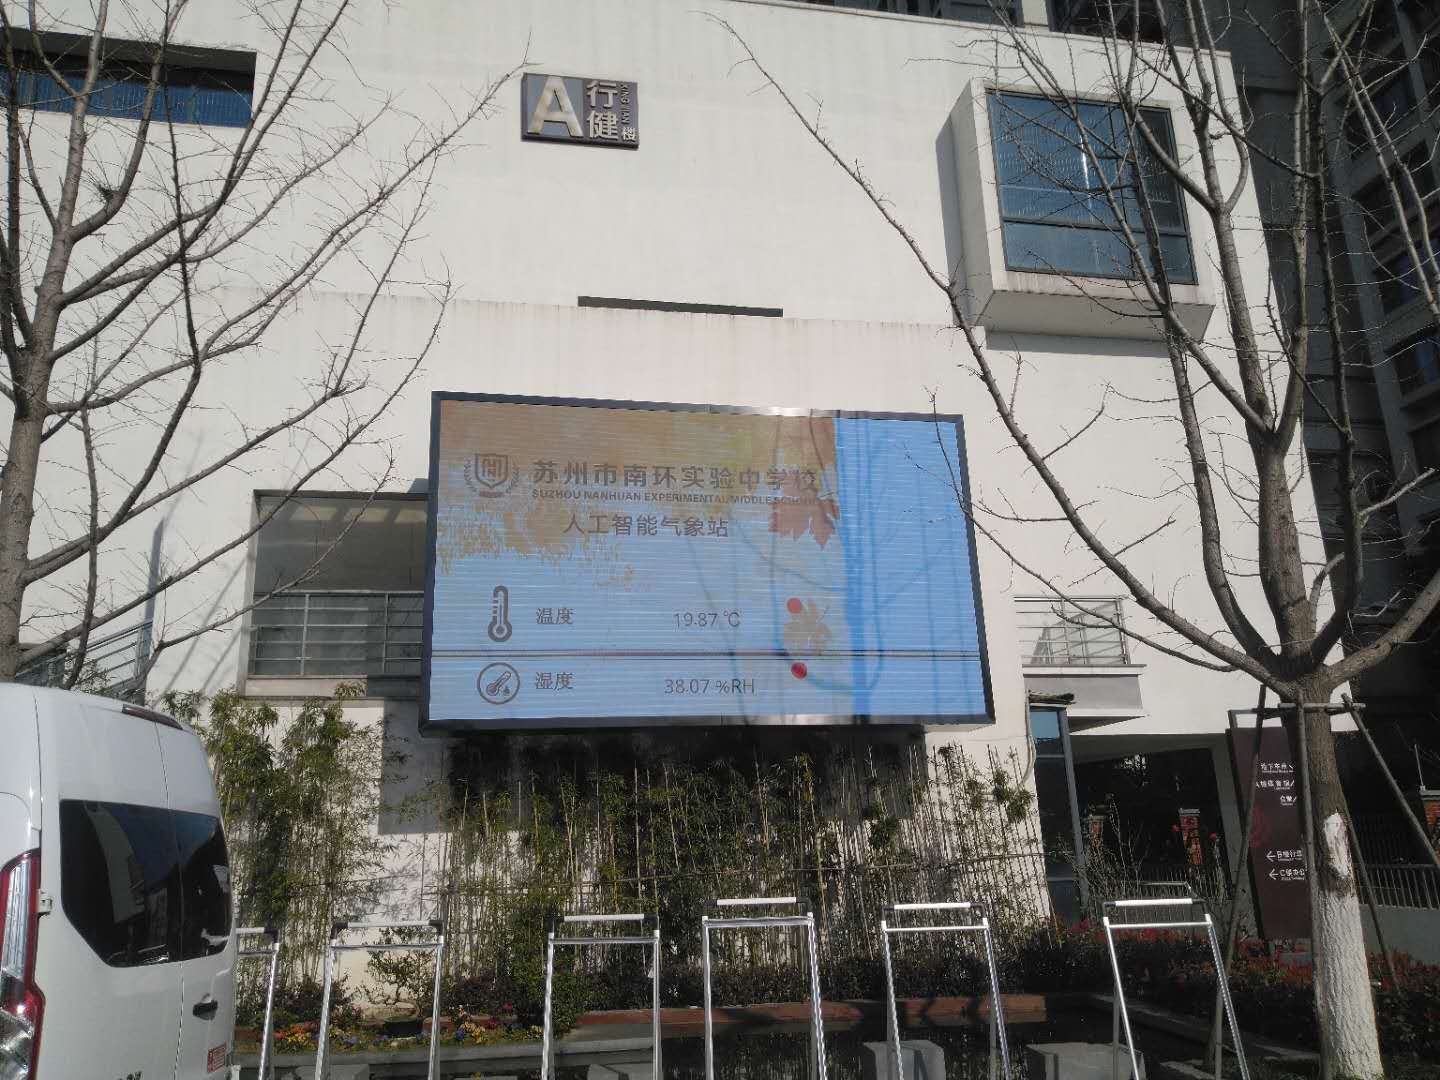 Jiangsu suzhou P4 outdoor hd display a middle school